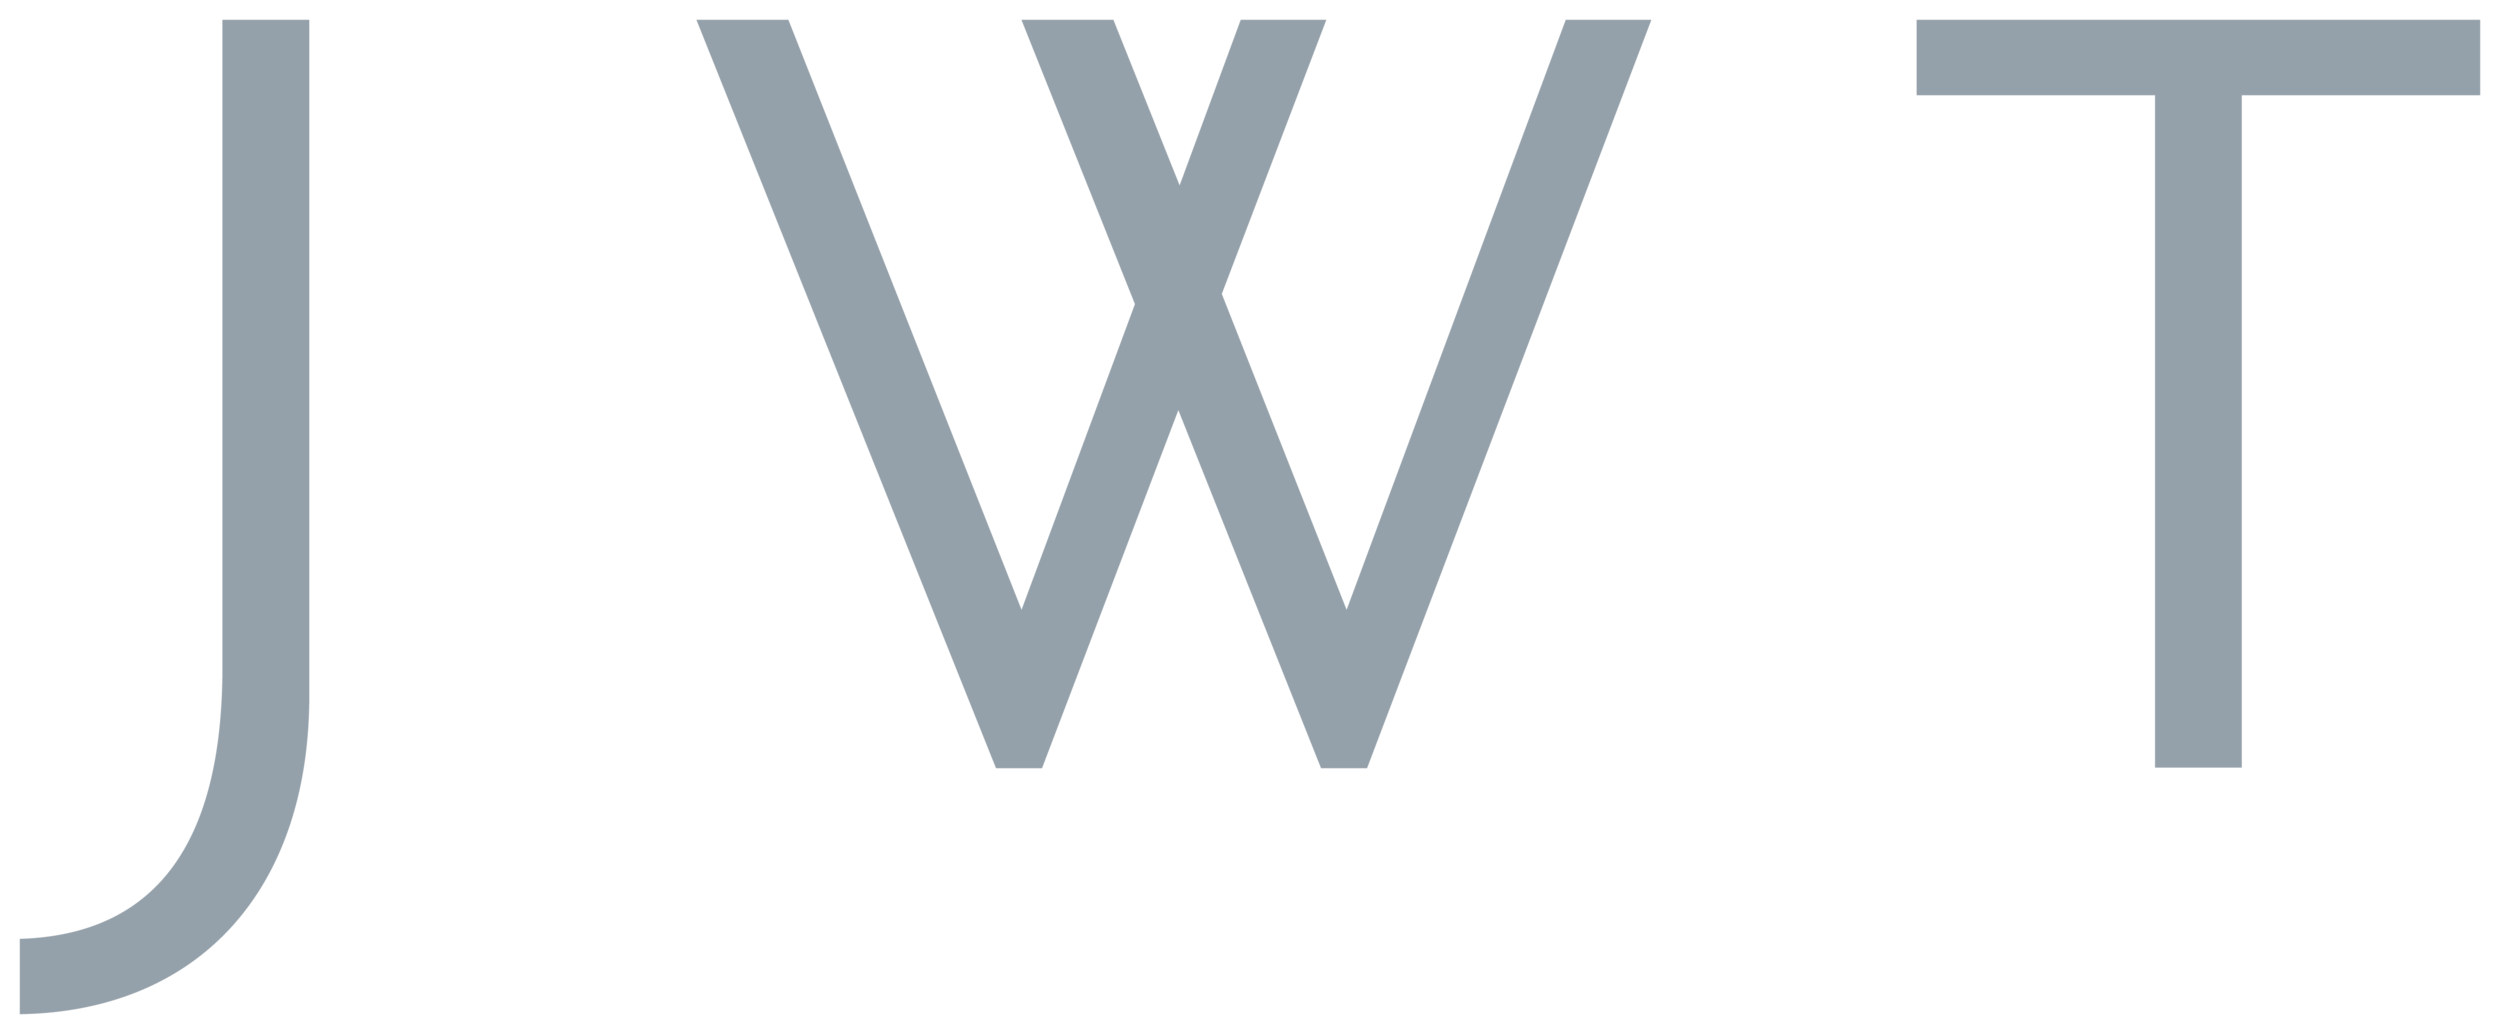 JWT-Logo.png